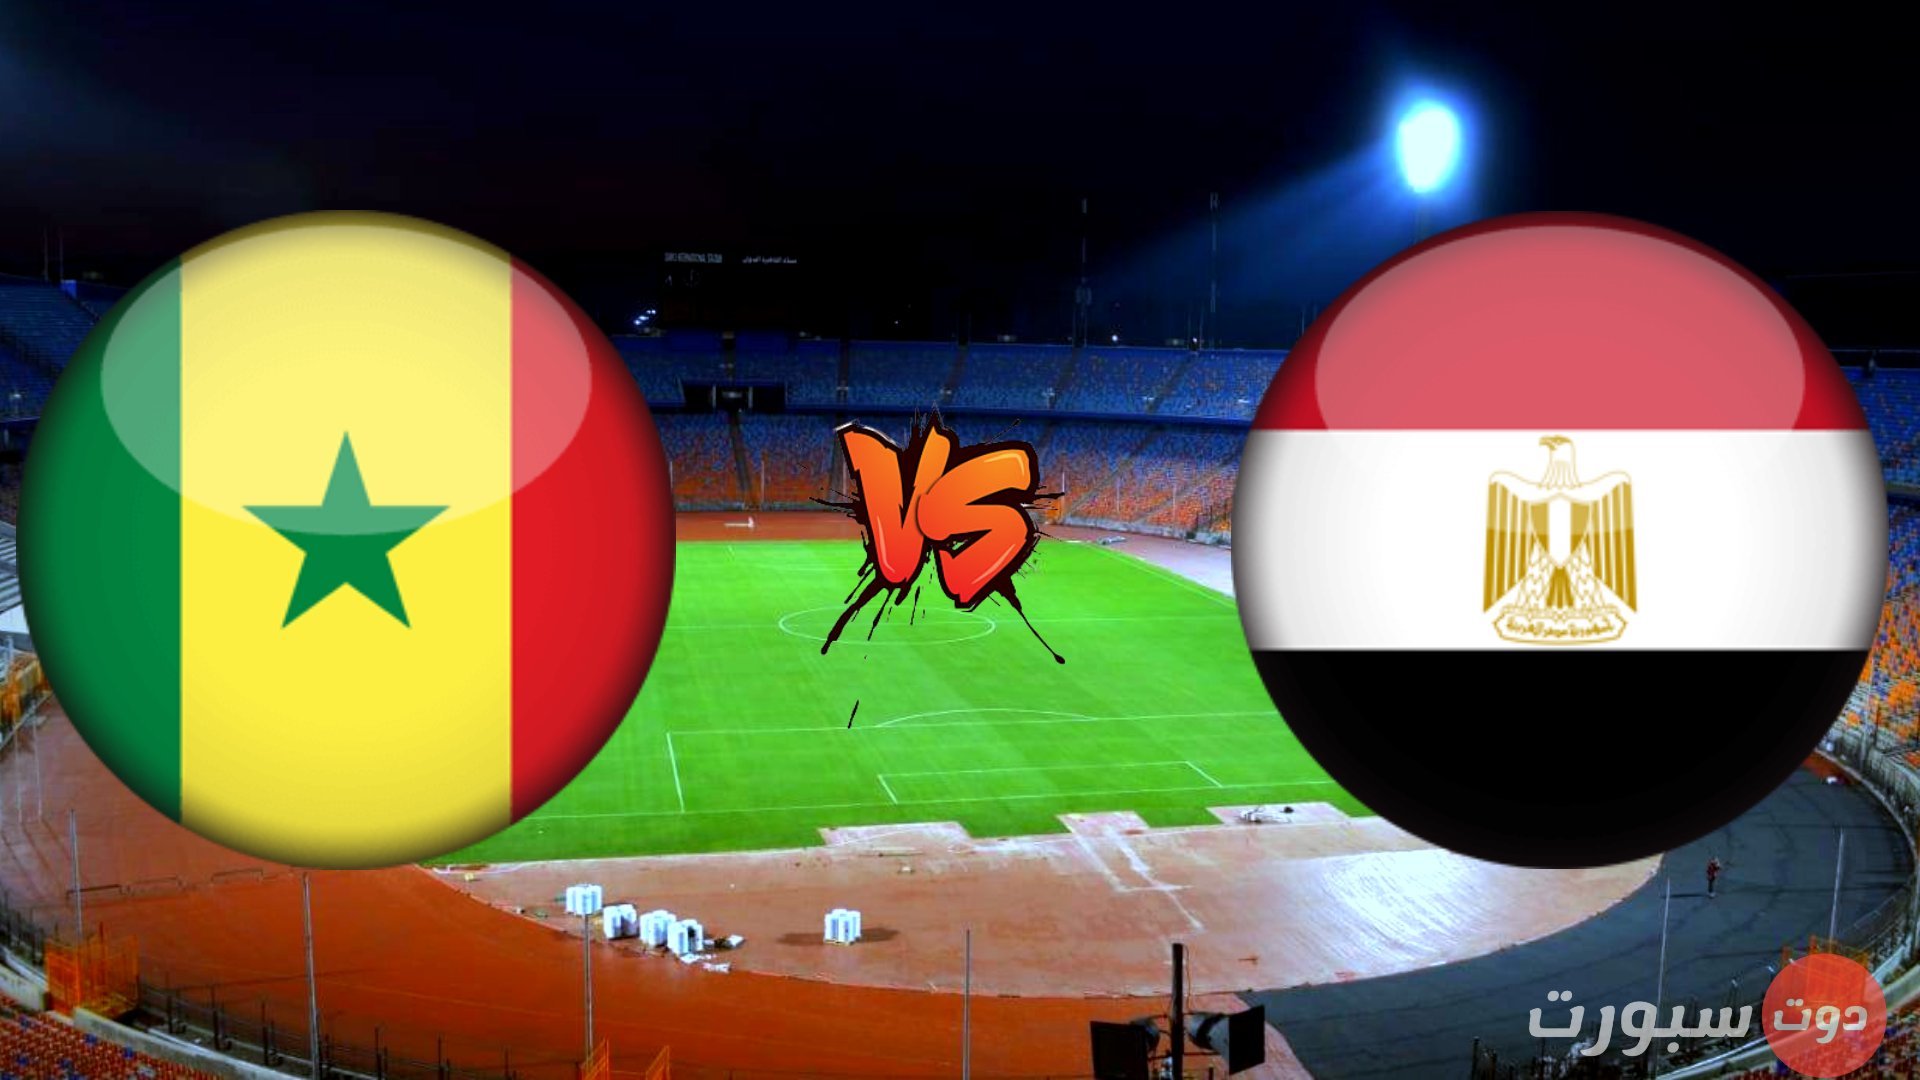 مباراة مصر والسنغال كاس العالم